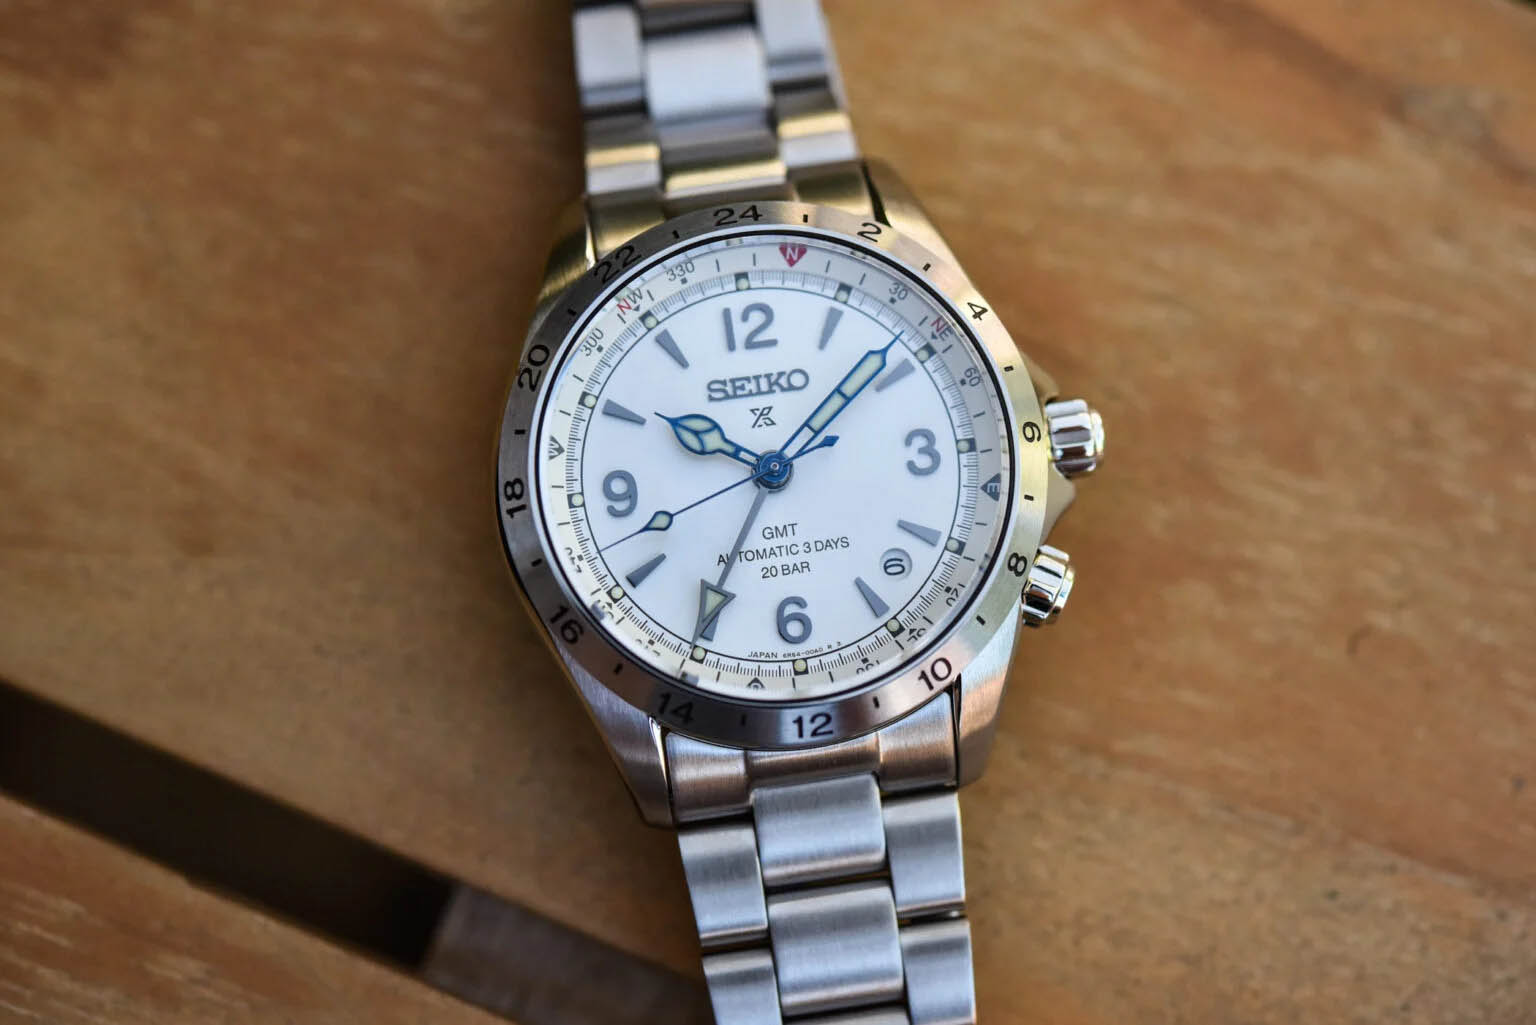 Seiko Alpinist lột xác, kỷ niệm 110 năm chiếc đồng hồ đeo tay đầu tiên, nhìn giống Explorer II quá!